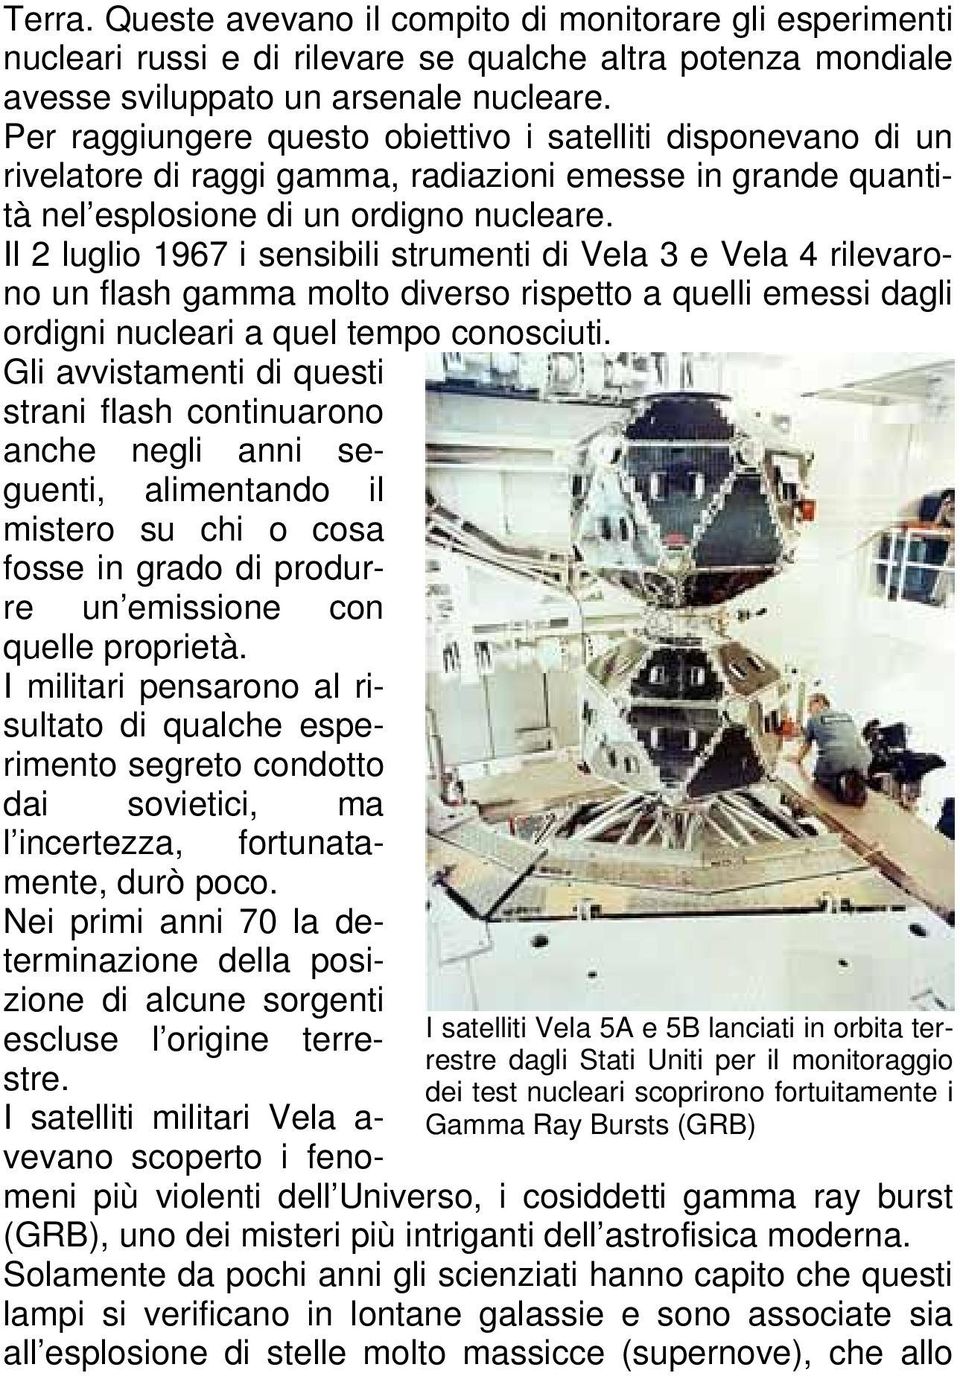 Il 2 luglio 1967 i sensibili strumenti di Vela 3 e Vela 4 rilevarono un flash gamma molto diverso rispetto a quelli emessi dagli ordigni nucleari a quel tempo conosciuti.